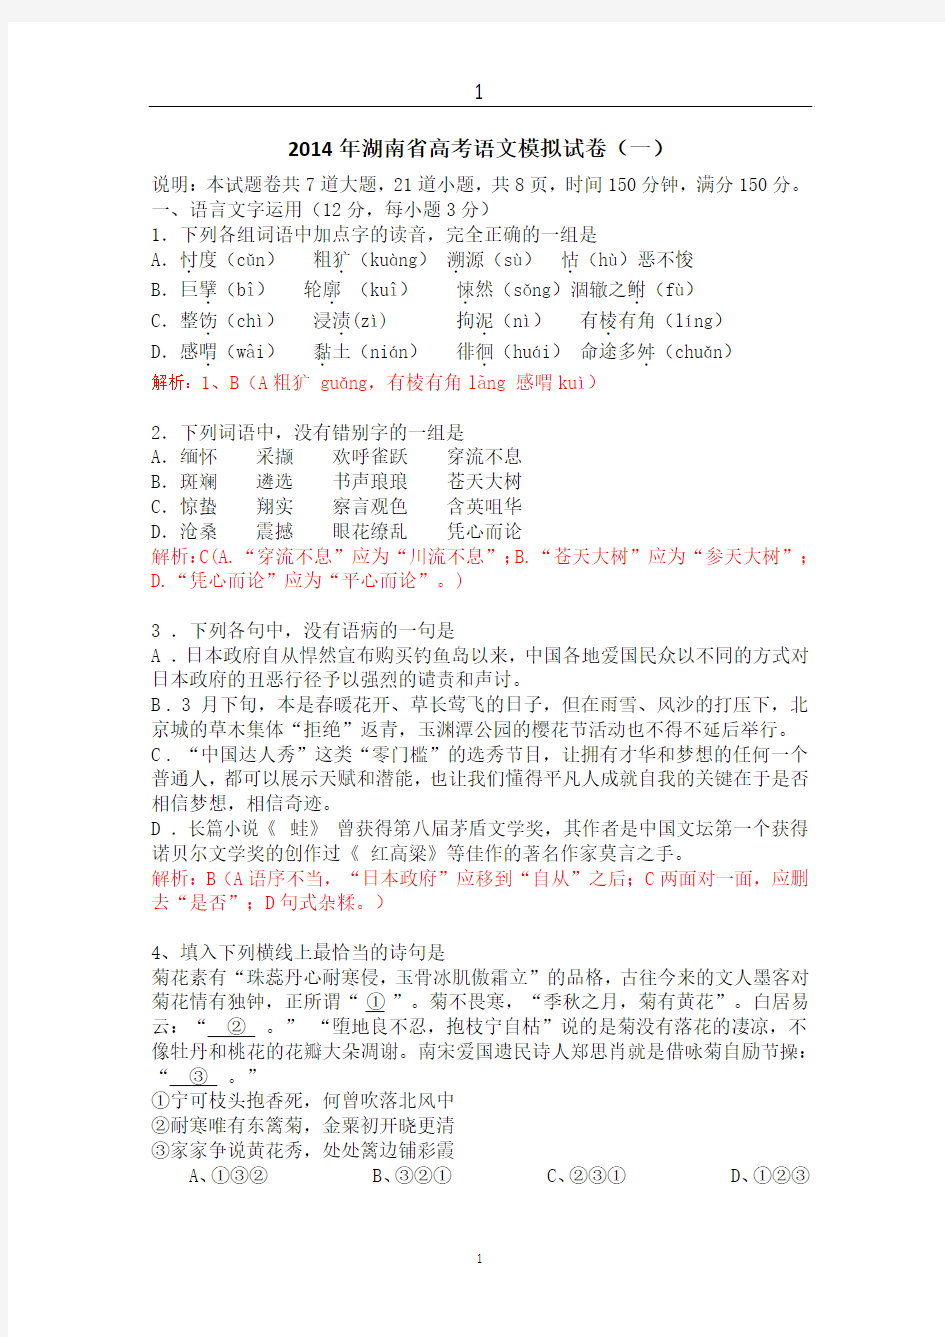 2014年湖南省高考语文模拟试卷(一)说明：本试题卷共7道大题,21道小题,共8页,时间150分钟,满分150分。